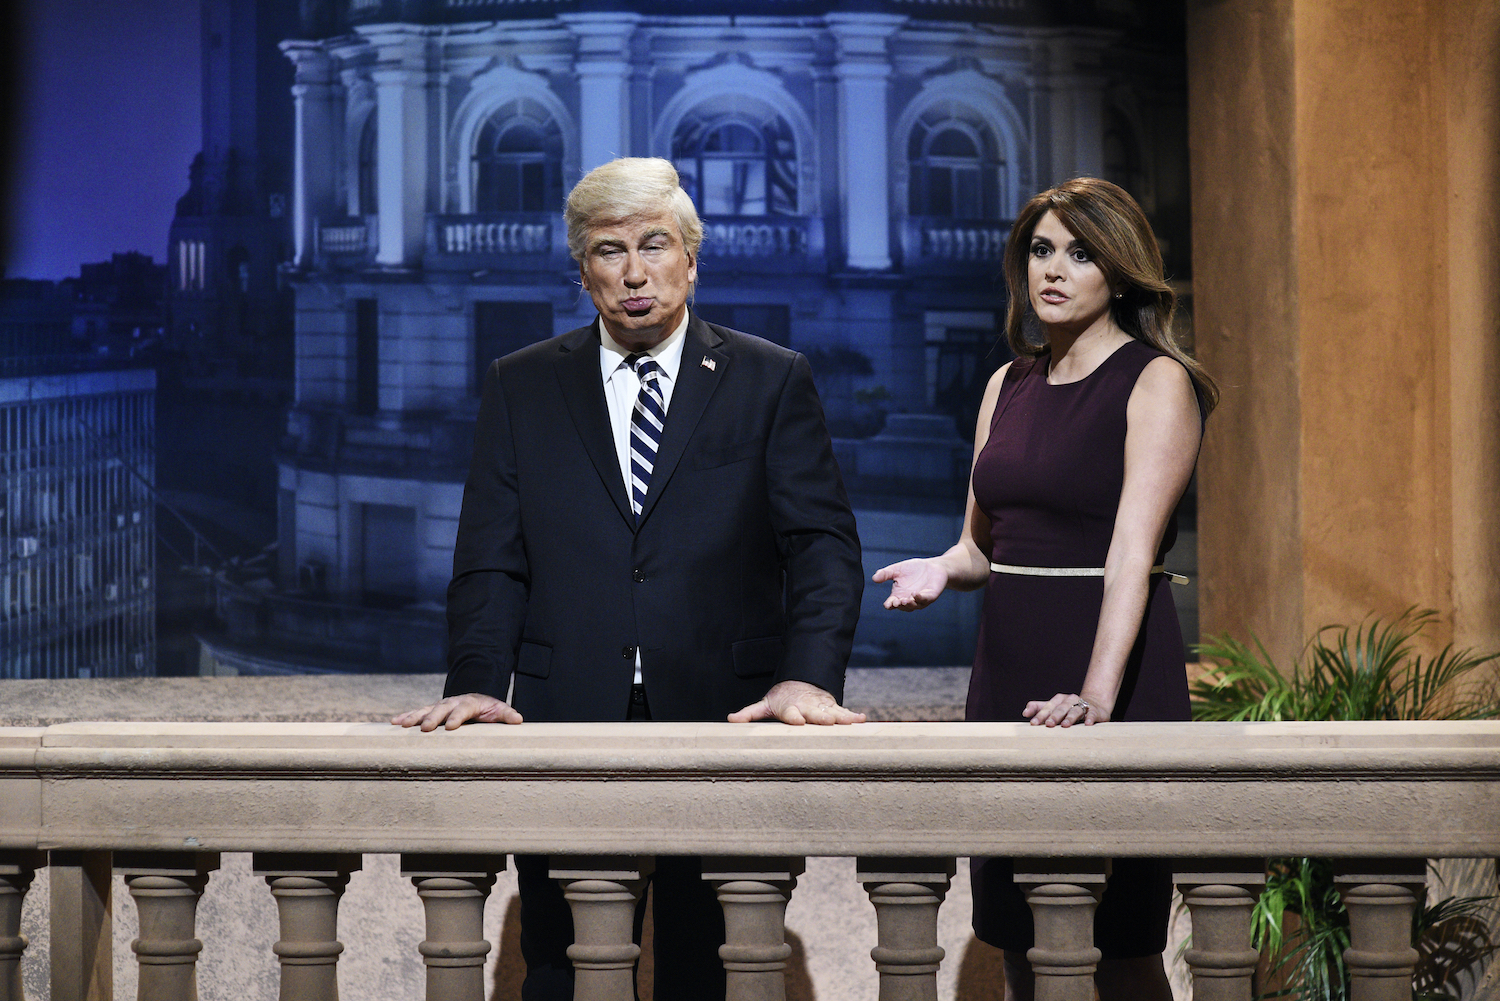 Alec Baldwin as Donald Trump and Cecily Strong as Melania Trump on 'SNL'